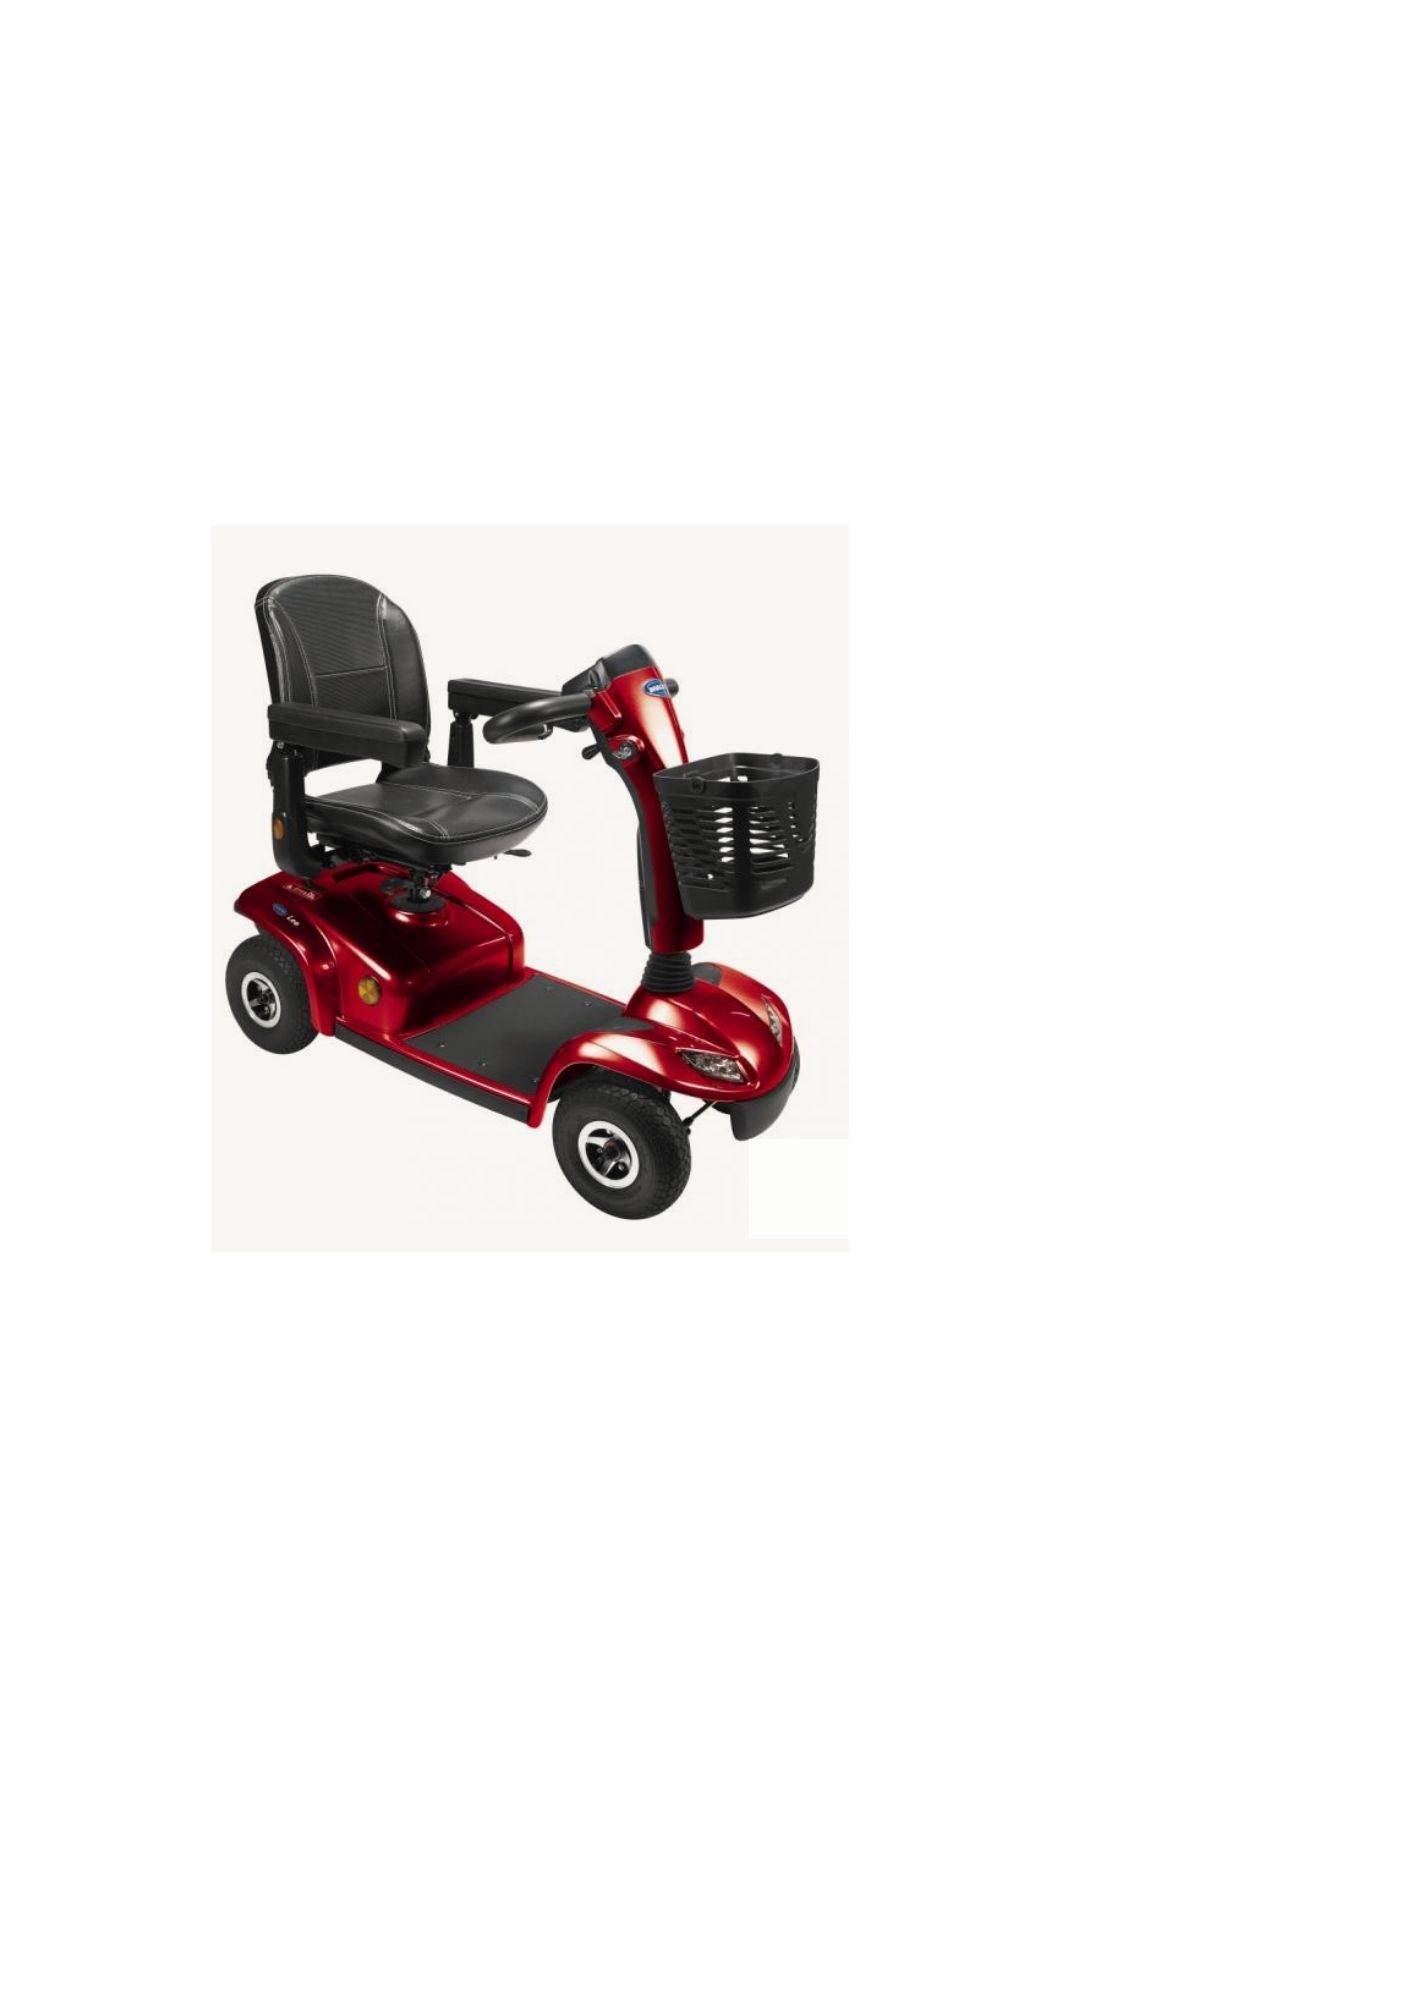 Scooter électrique Invacare Leo - Scooter handicap / senior - Tous